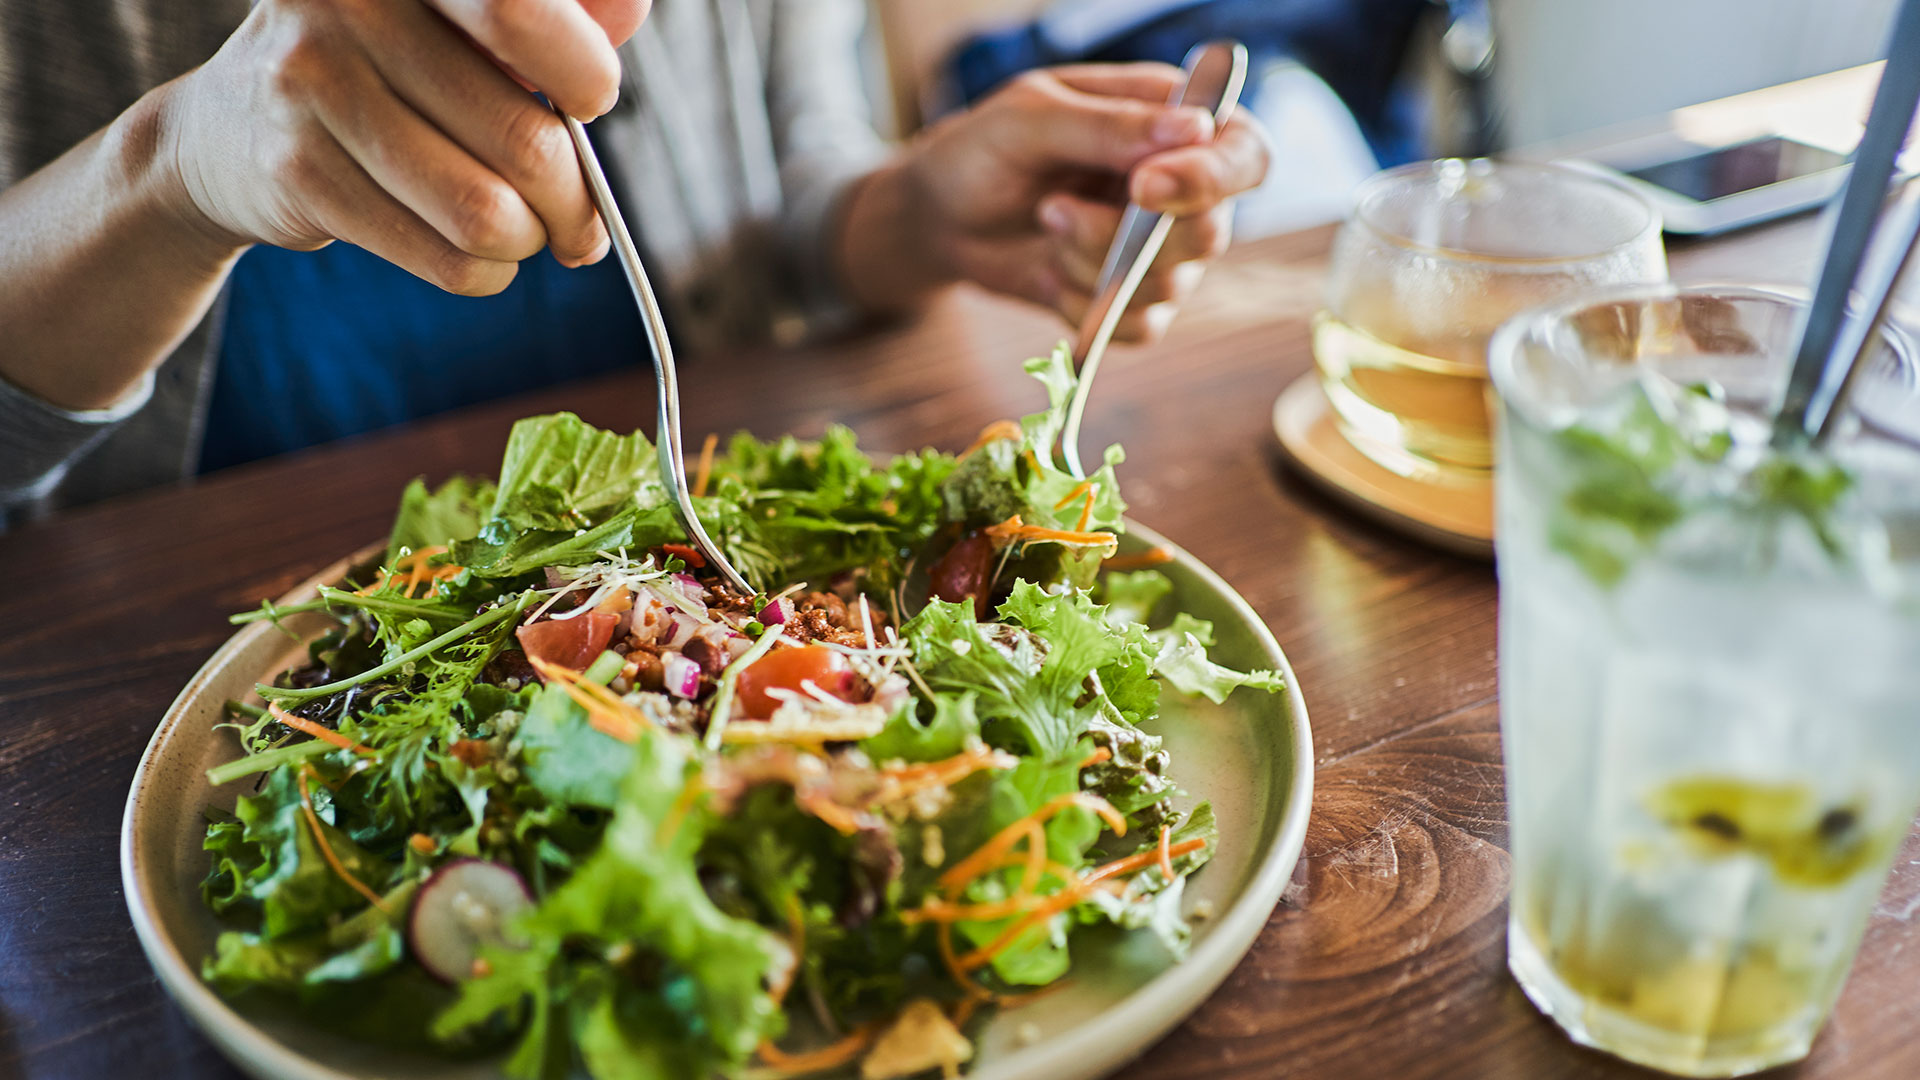 Investigaciones recientes sugieren que las dietas a base de plantas pueden reducir la presión arterial, mejorar el colesterol y ayudar a perder peso (Getty)